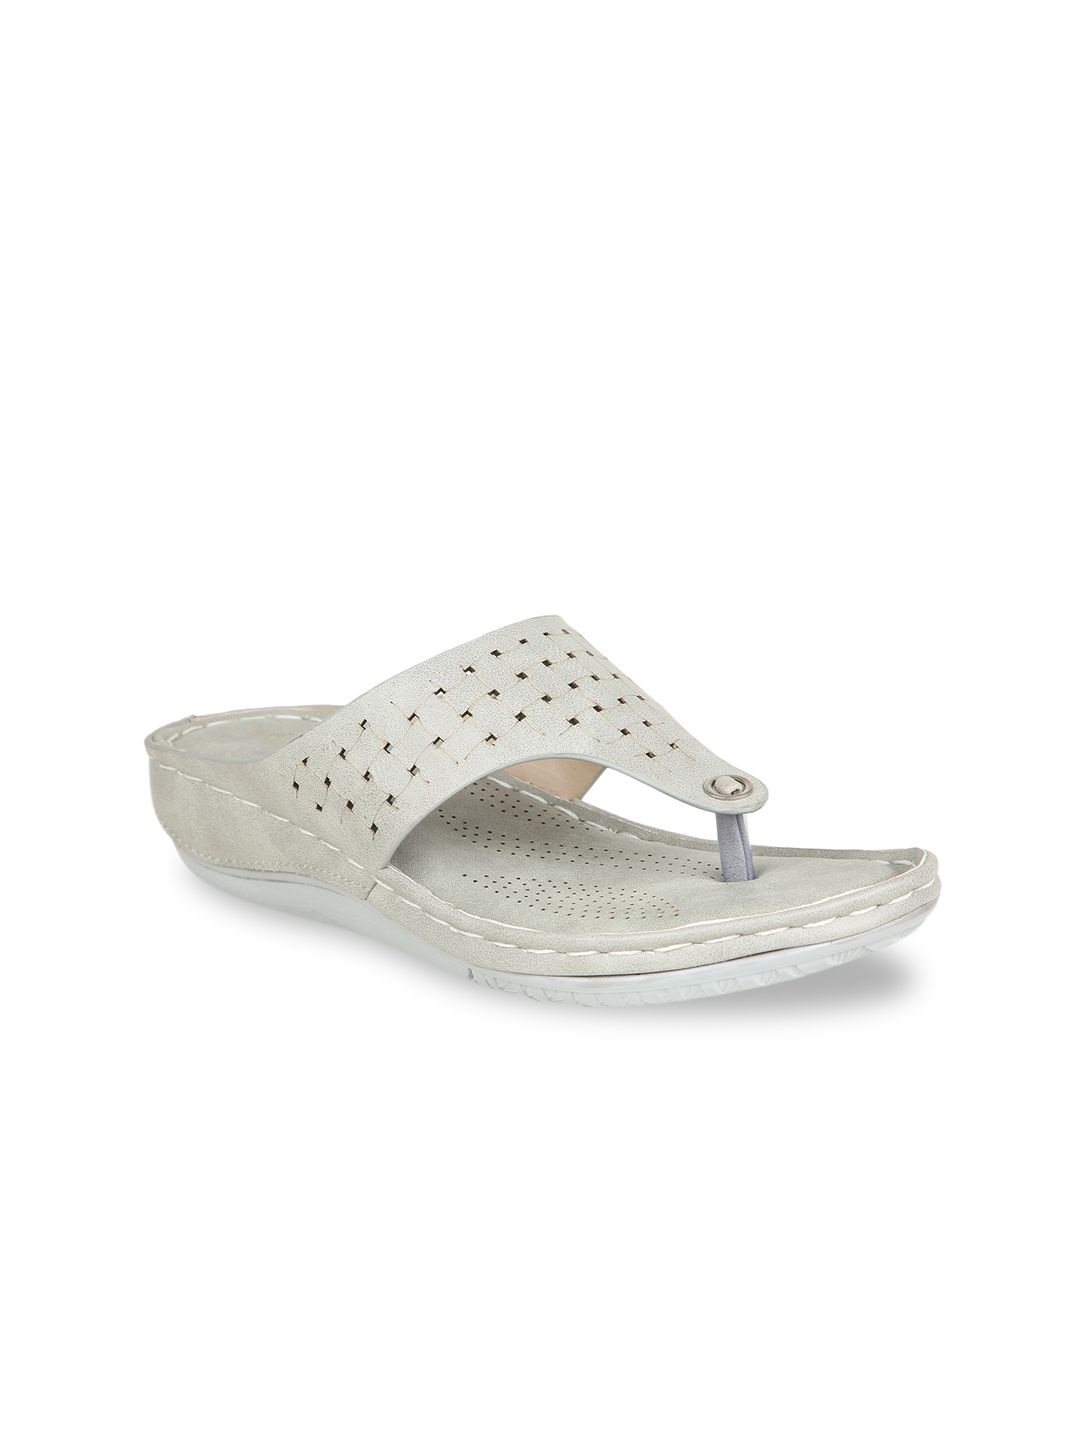 VALIOSAA Grey Textured Comfort Sandals Price in India